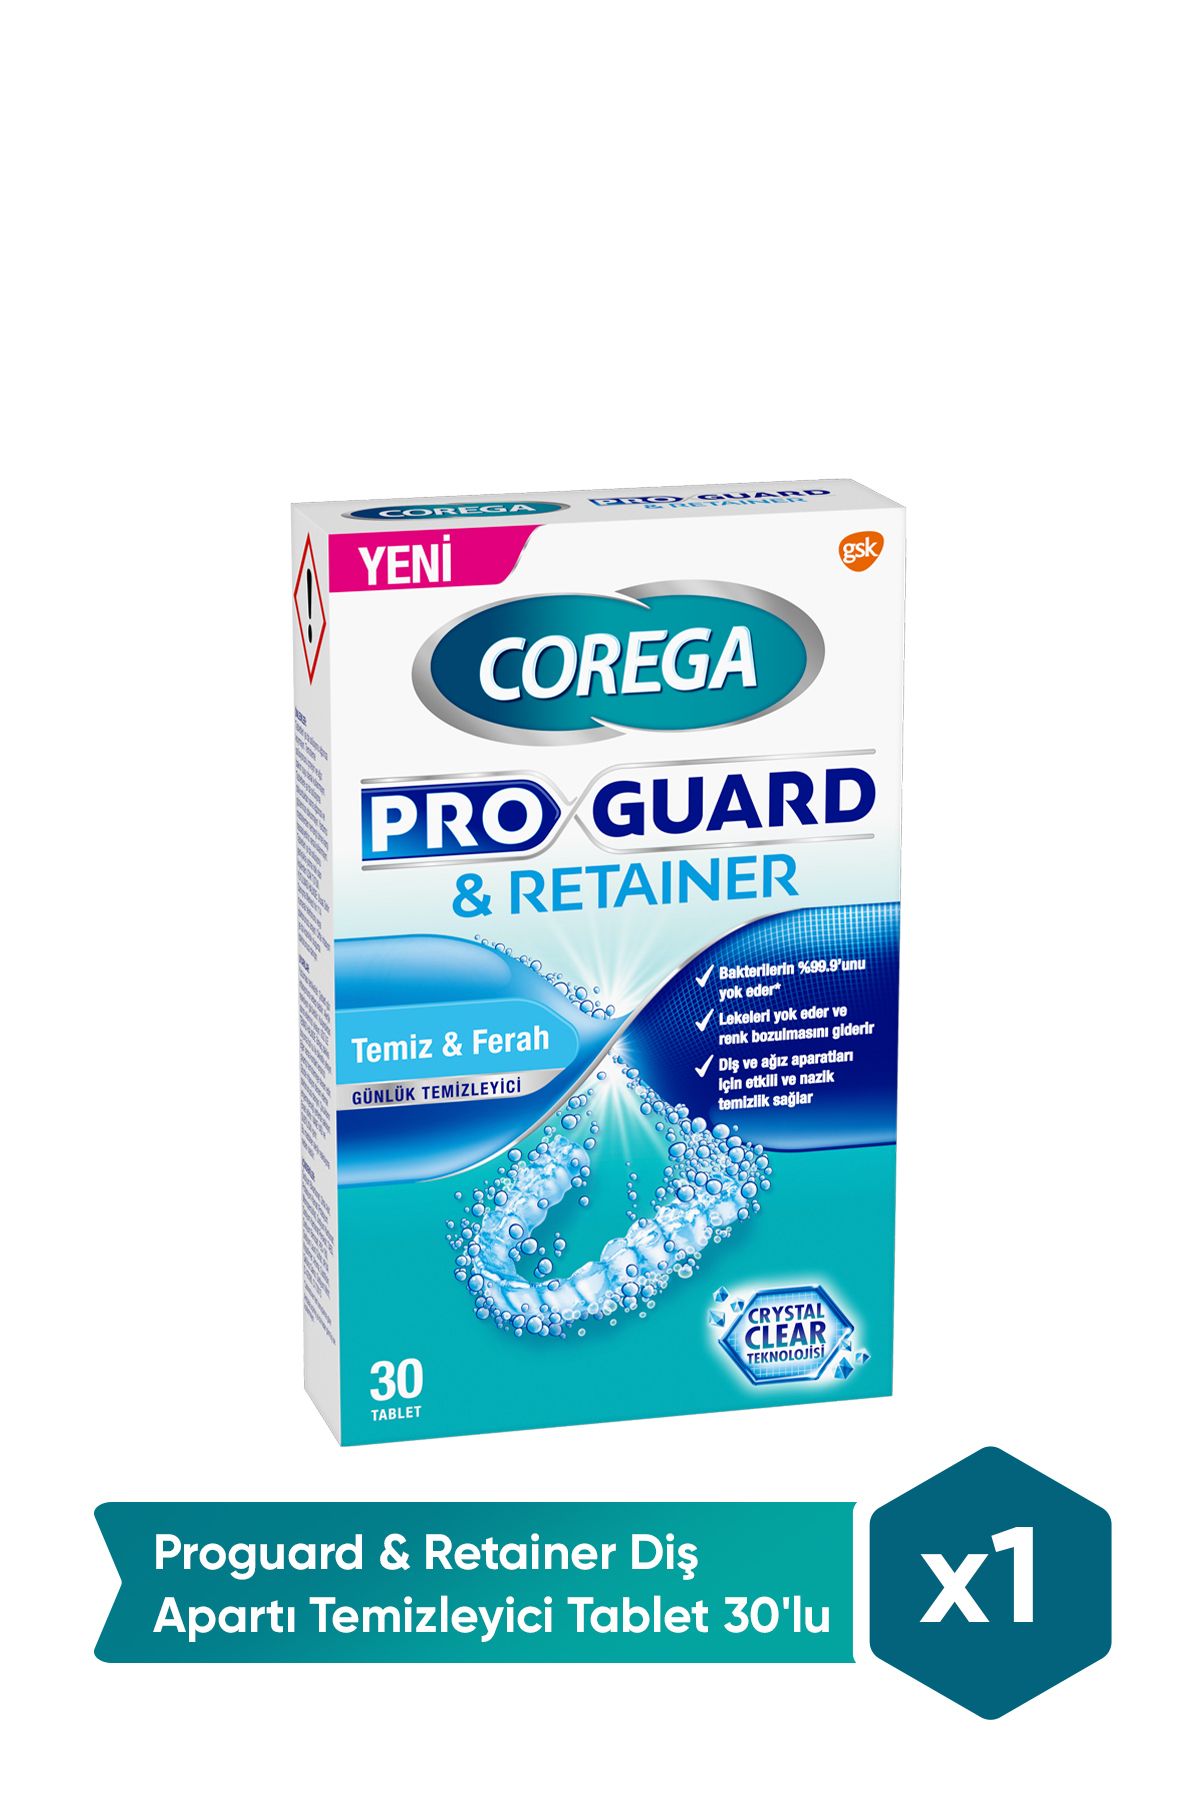 Corega Proguard & Retainer Diş Apartı Temizleyici Tablet 30'lu